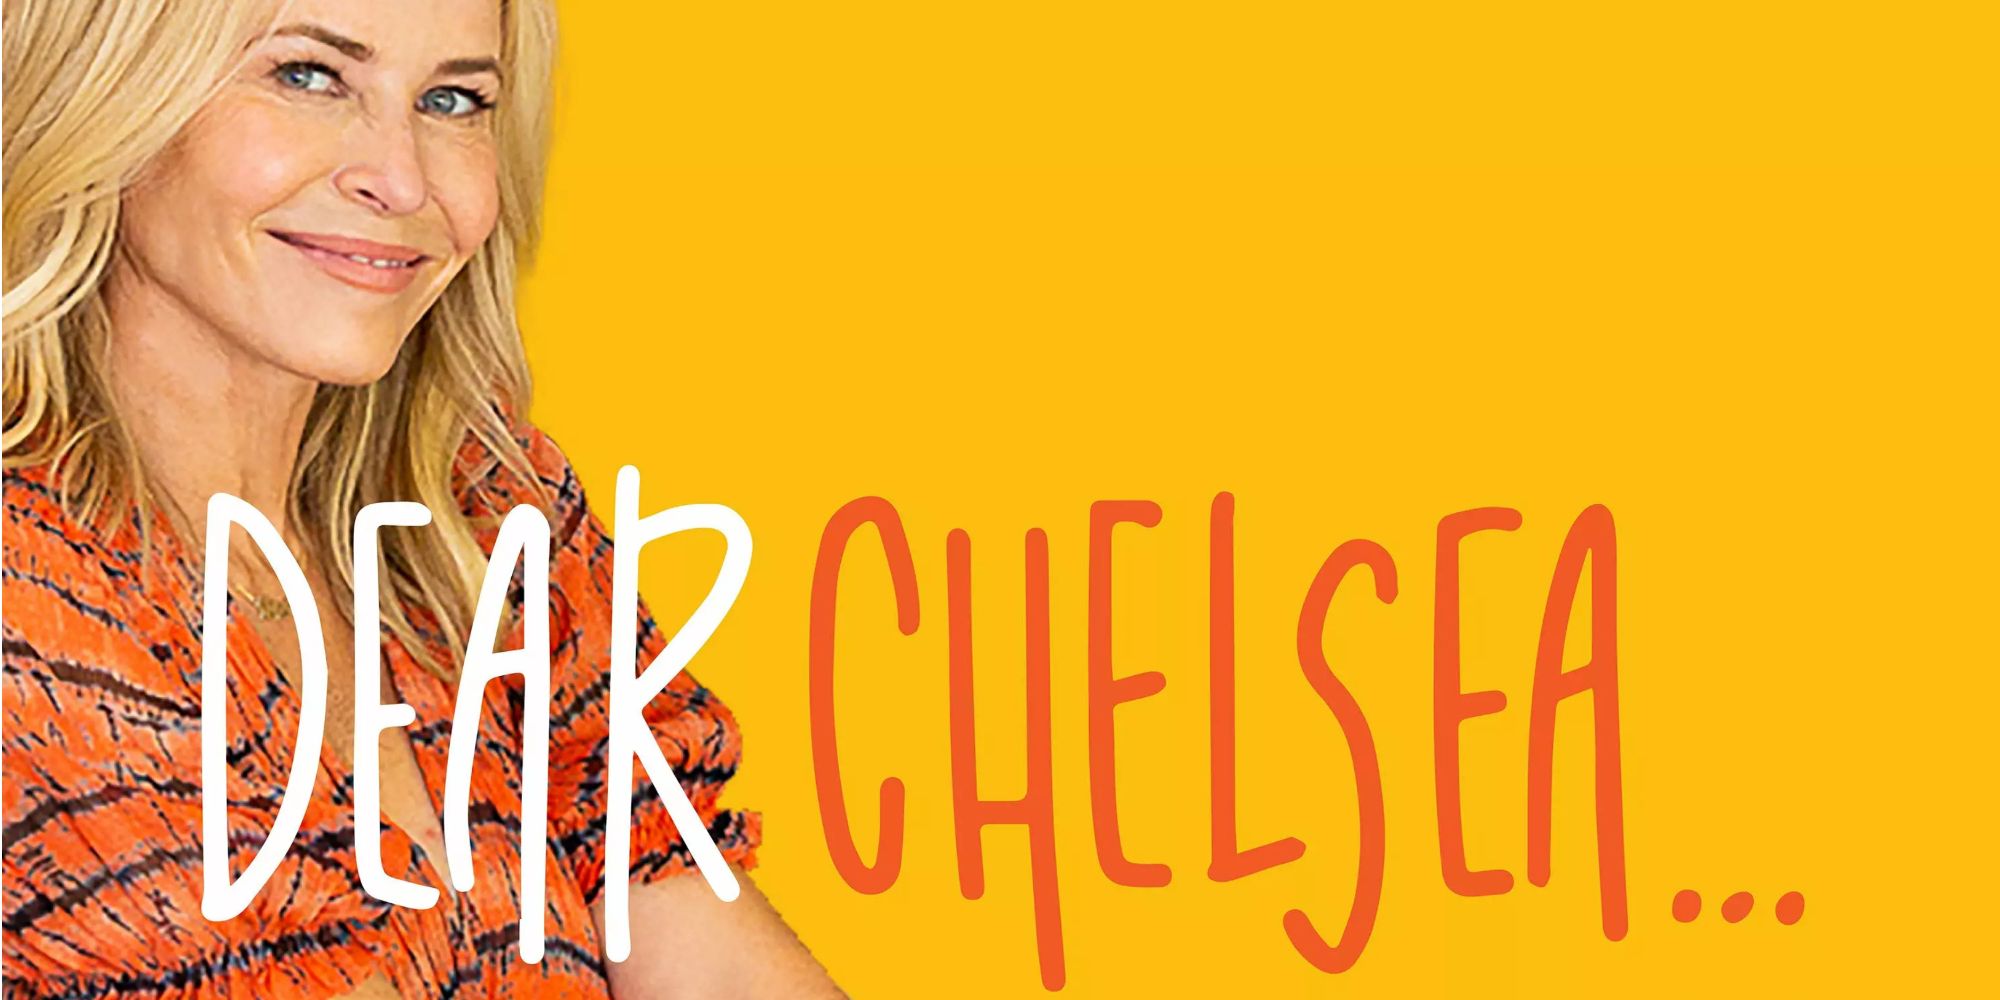 Chelsea Handler on Dear Chelsea Podcast